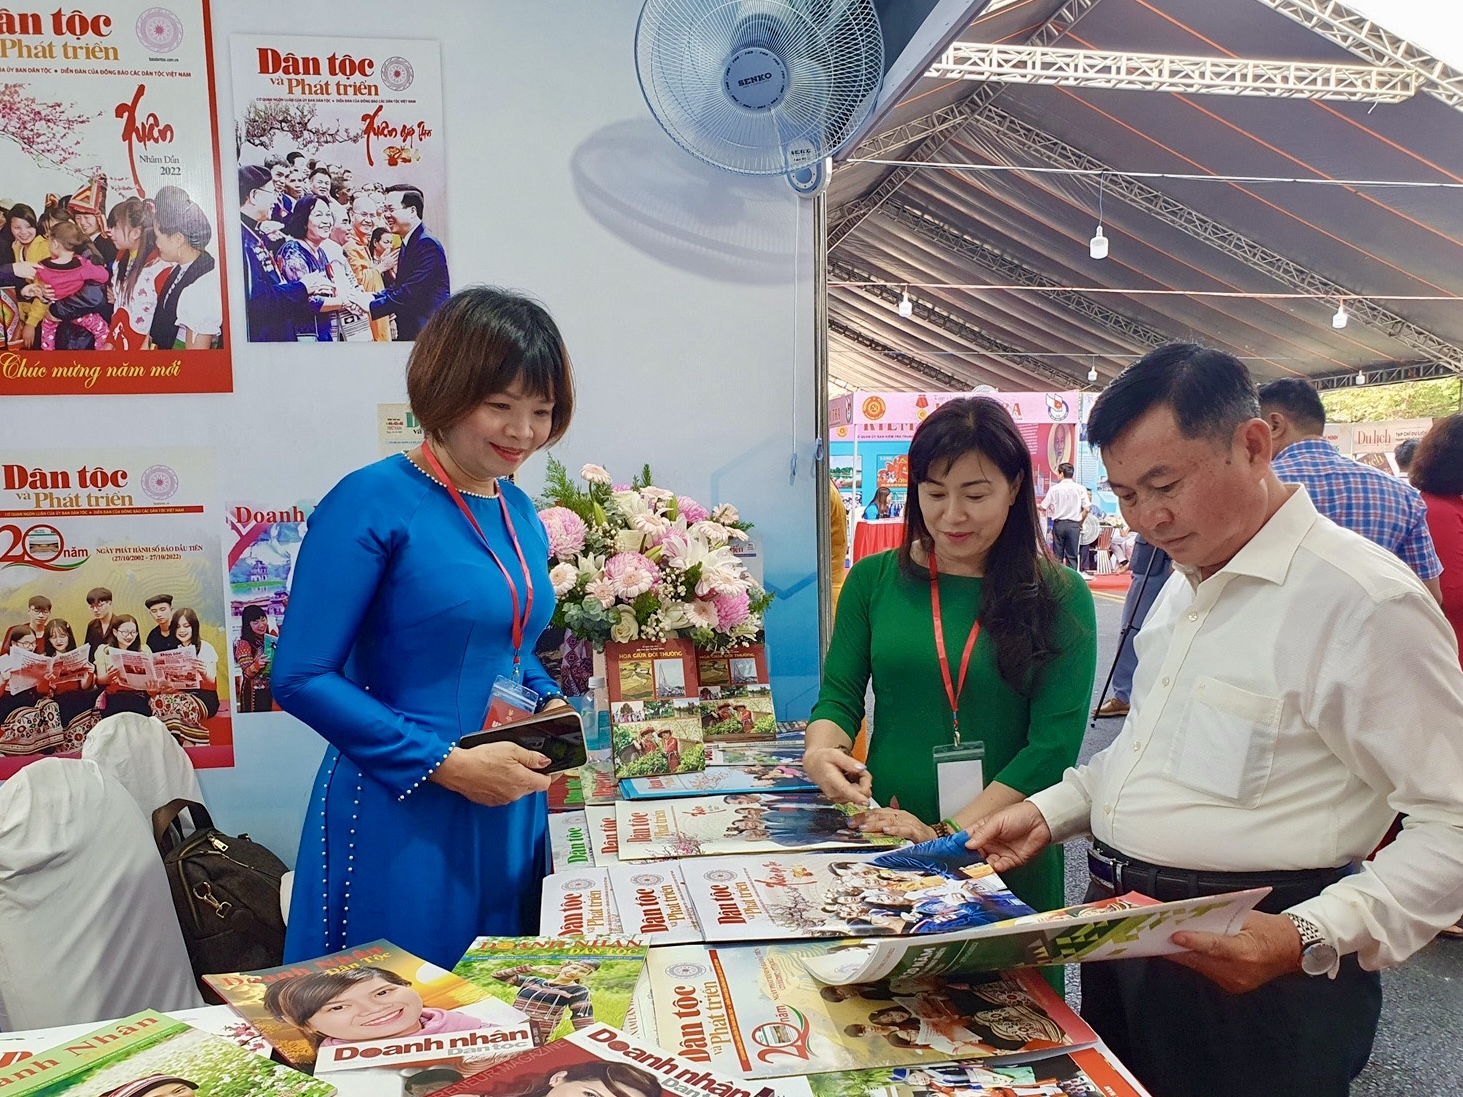  Với việc giành giải C - Gian hàng trưng bày xuất sắc, Báo Dân tộc và Phát triển đã đóng góp vào thành công của Hội báo toàn quốc lần đầu tiên được tổ chức tại TP. Hồ Chí Minh.